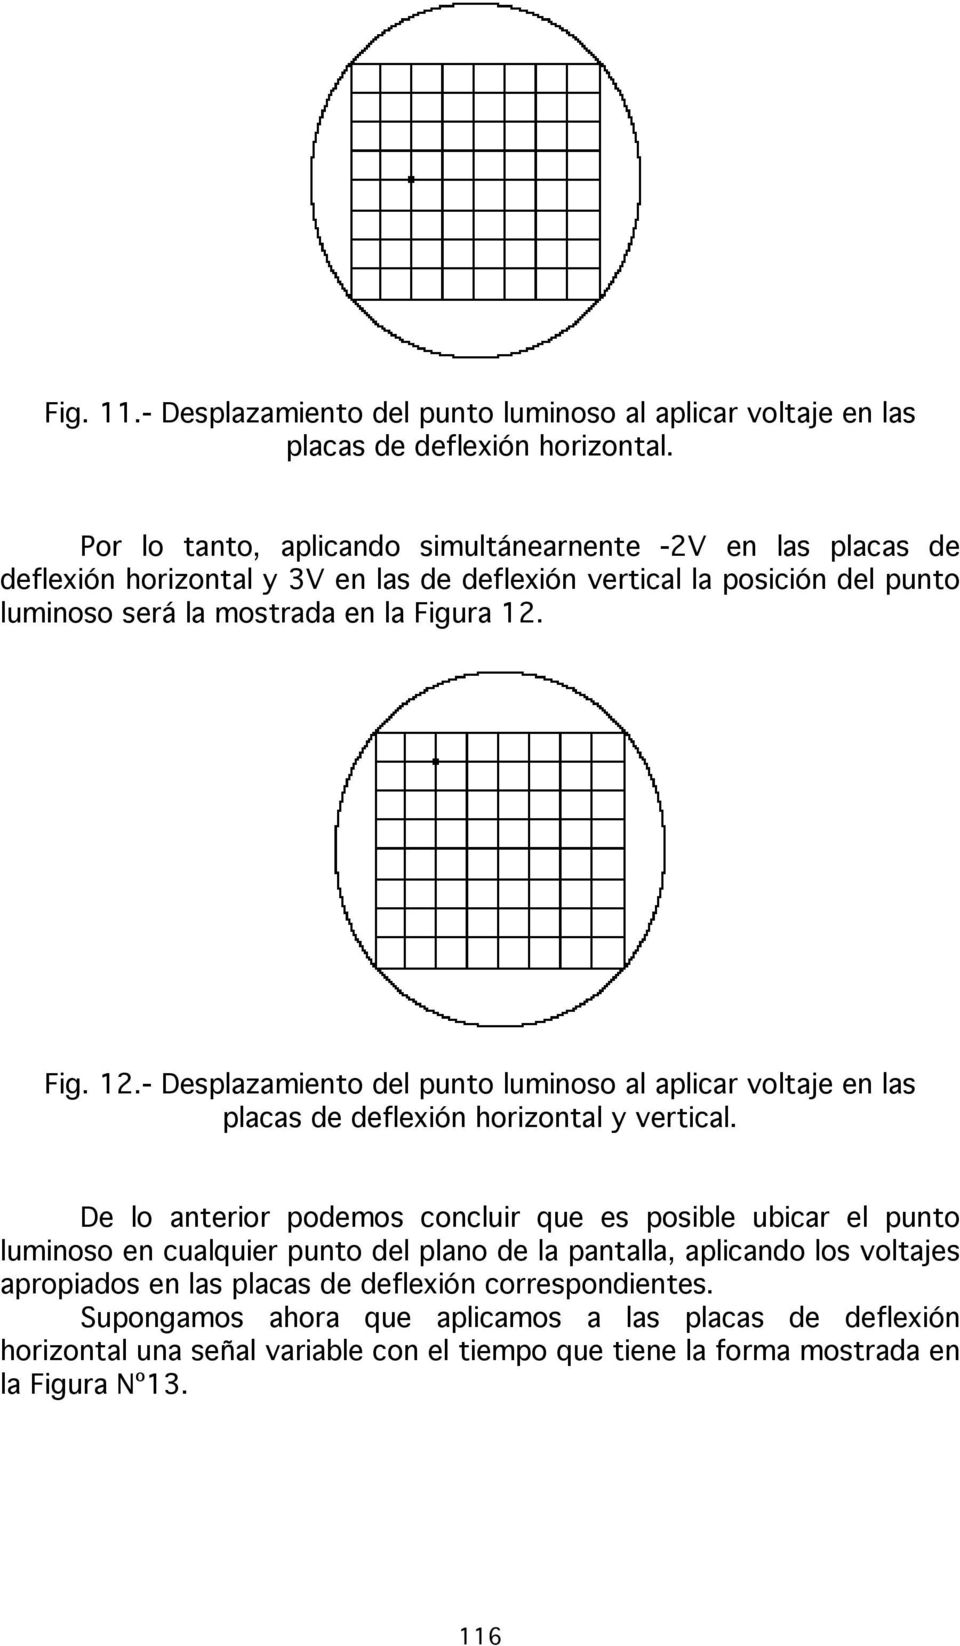 Fig. 12.- Desplazamiento del punto luminoso al aplicar voltaje en las placas de deflexión horizontal y vertical.